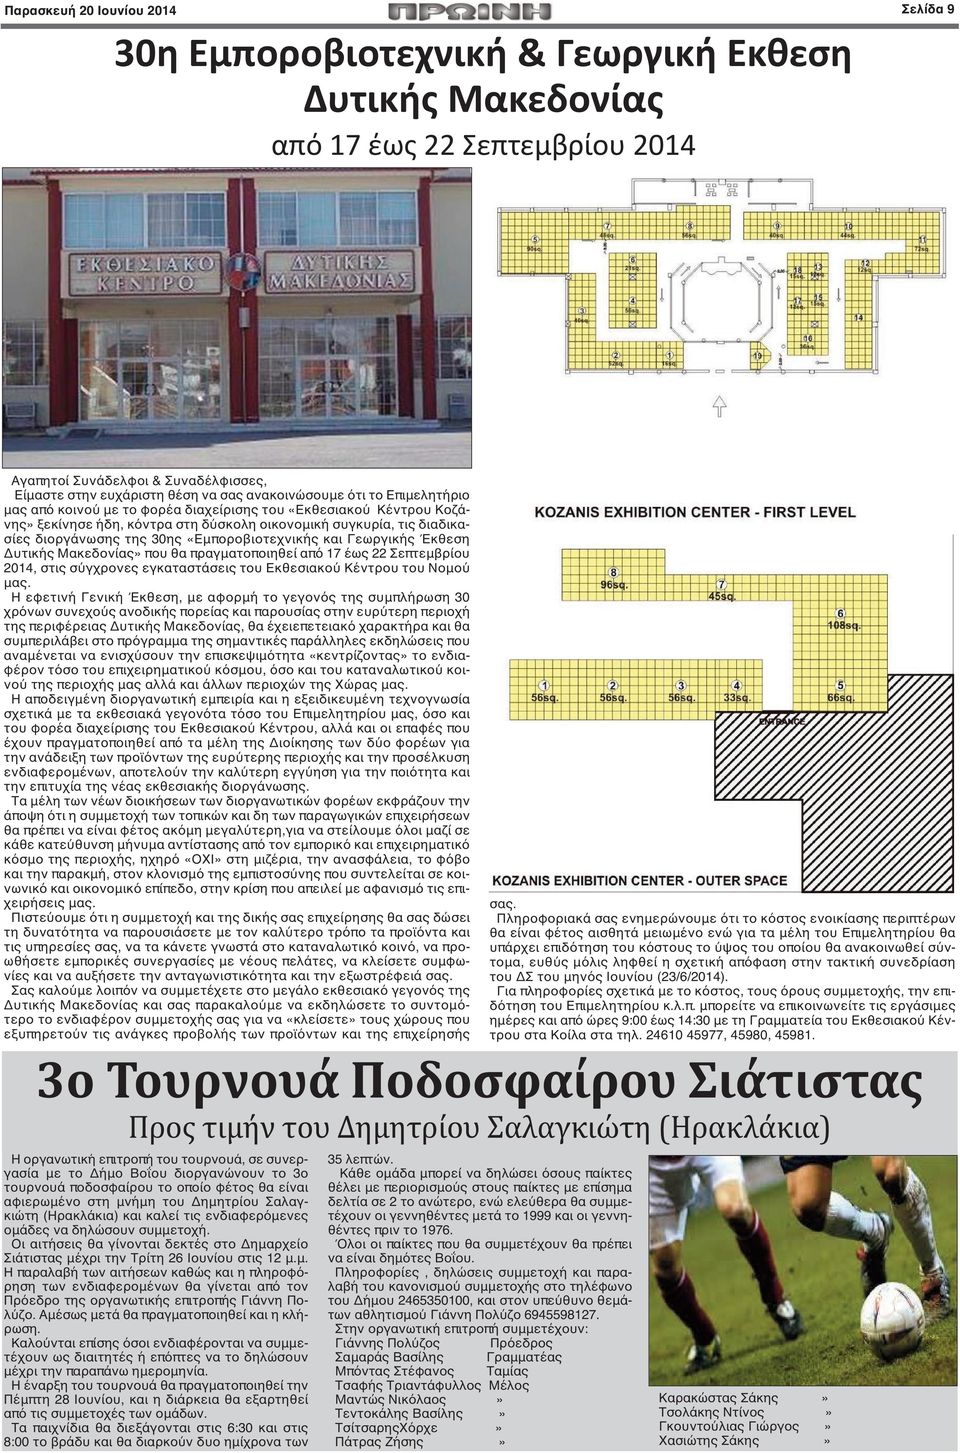 «Εμποροβιοτεχνικής και Γεωργικής Έκθεση Δυτικής Μακεδονίας» που θα πραγματοποιηθεί από 17 έως 22 Σεπτεμβρίου 2014, στις σύγχρονες εγκαταστάσεις του Εκθεσιακού Κέντρου του Νομού μας.